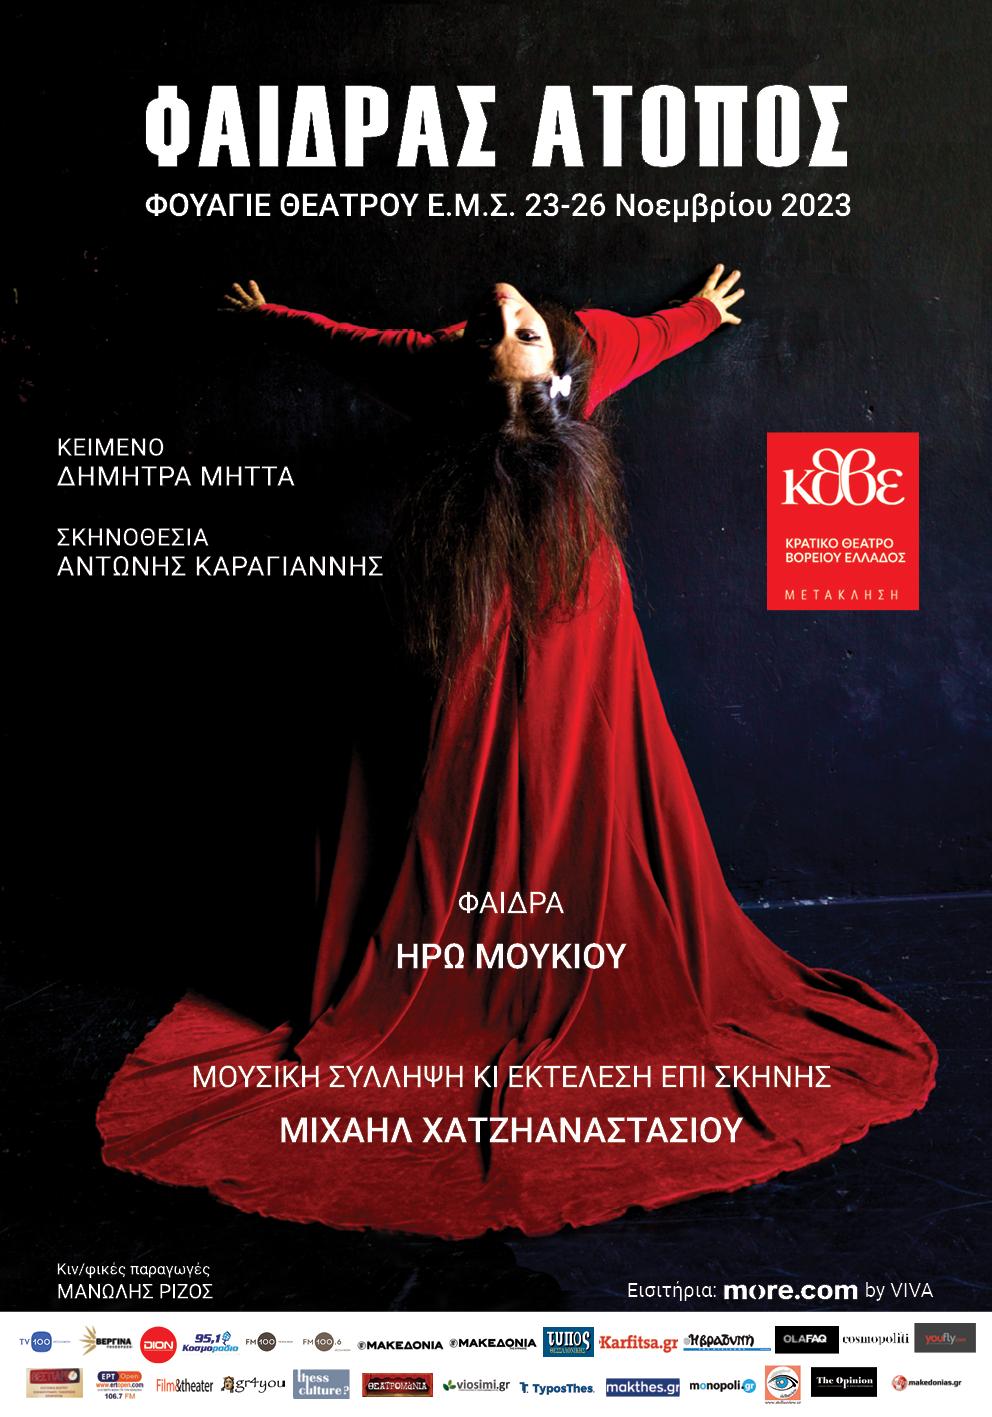 «Φαίδρας Άτοπος» με την Ηρώ Μουκίου και τον Μιχαήλ Χατζηαναστασίου/ Έρχεται στο Φουαγιέ του θεάτρου της Εταιρείας Μακεδονικών Σπουδών από τις 23 έως τις 26 Νοεμβρίου